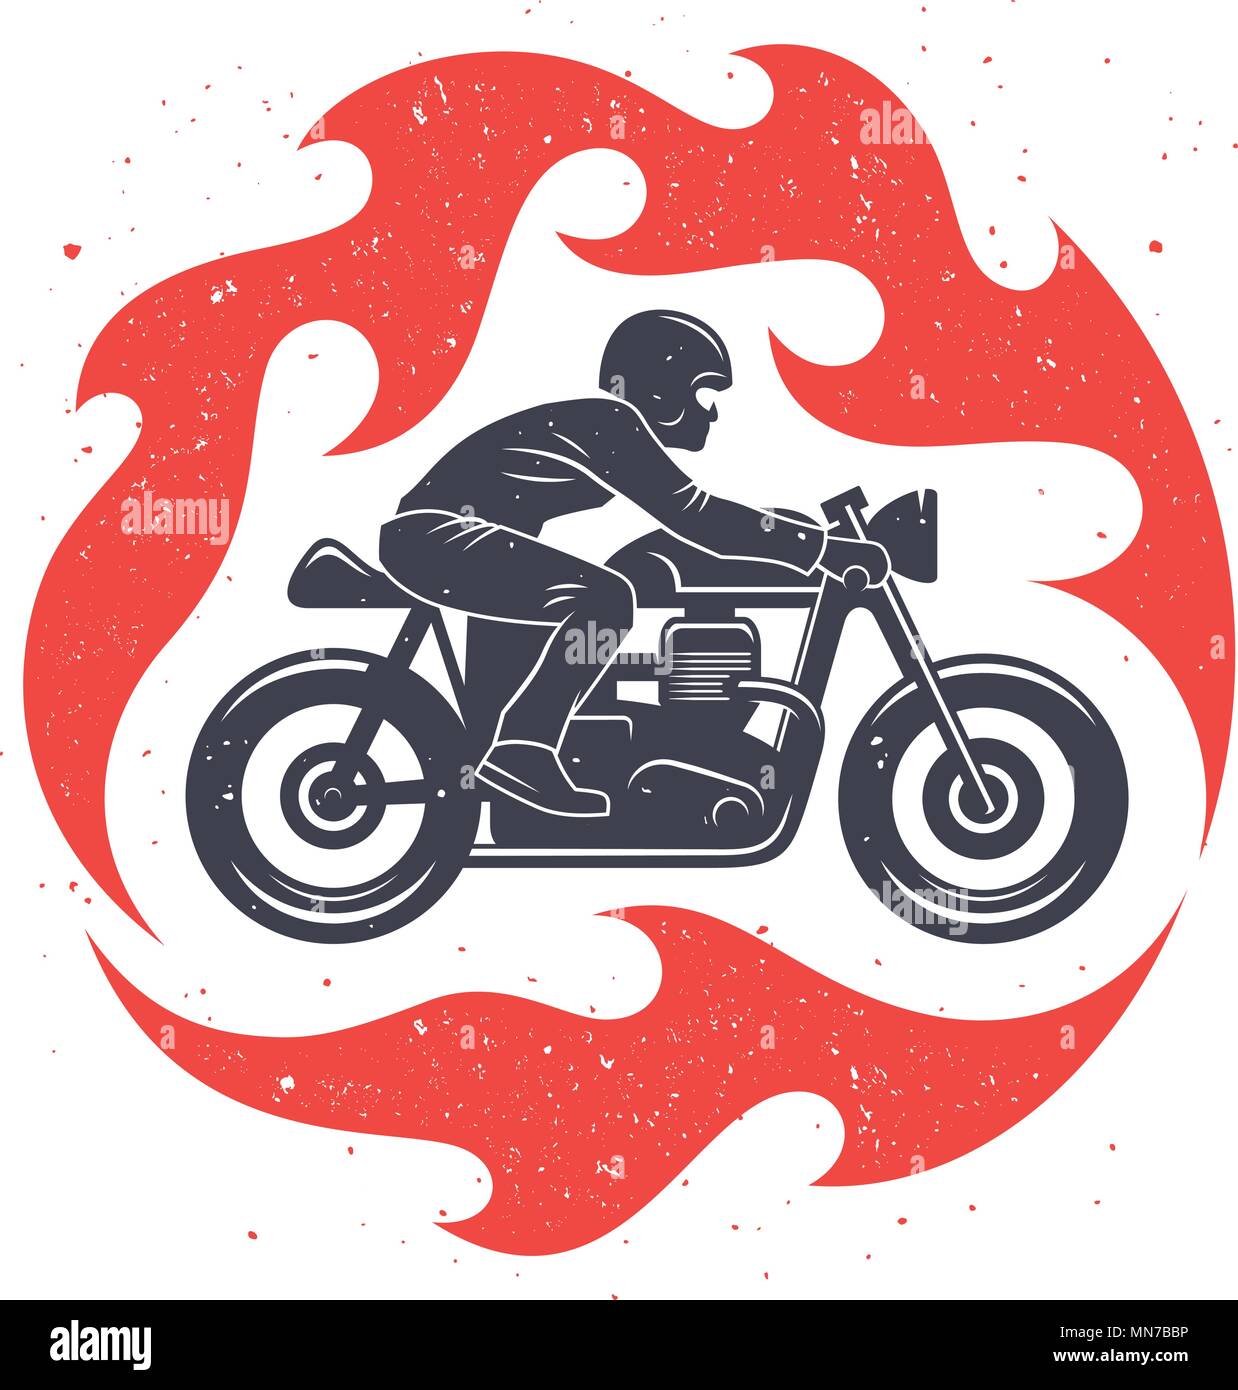 Vector Illustration mit einem Motorradfahrer und Spurte der Flamme/Cafe Racer Graphic Tee/T-shirt Design Stock Vektor